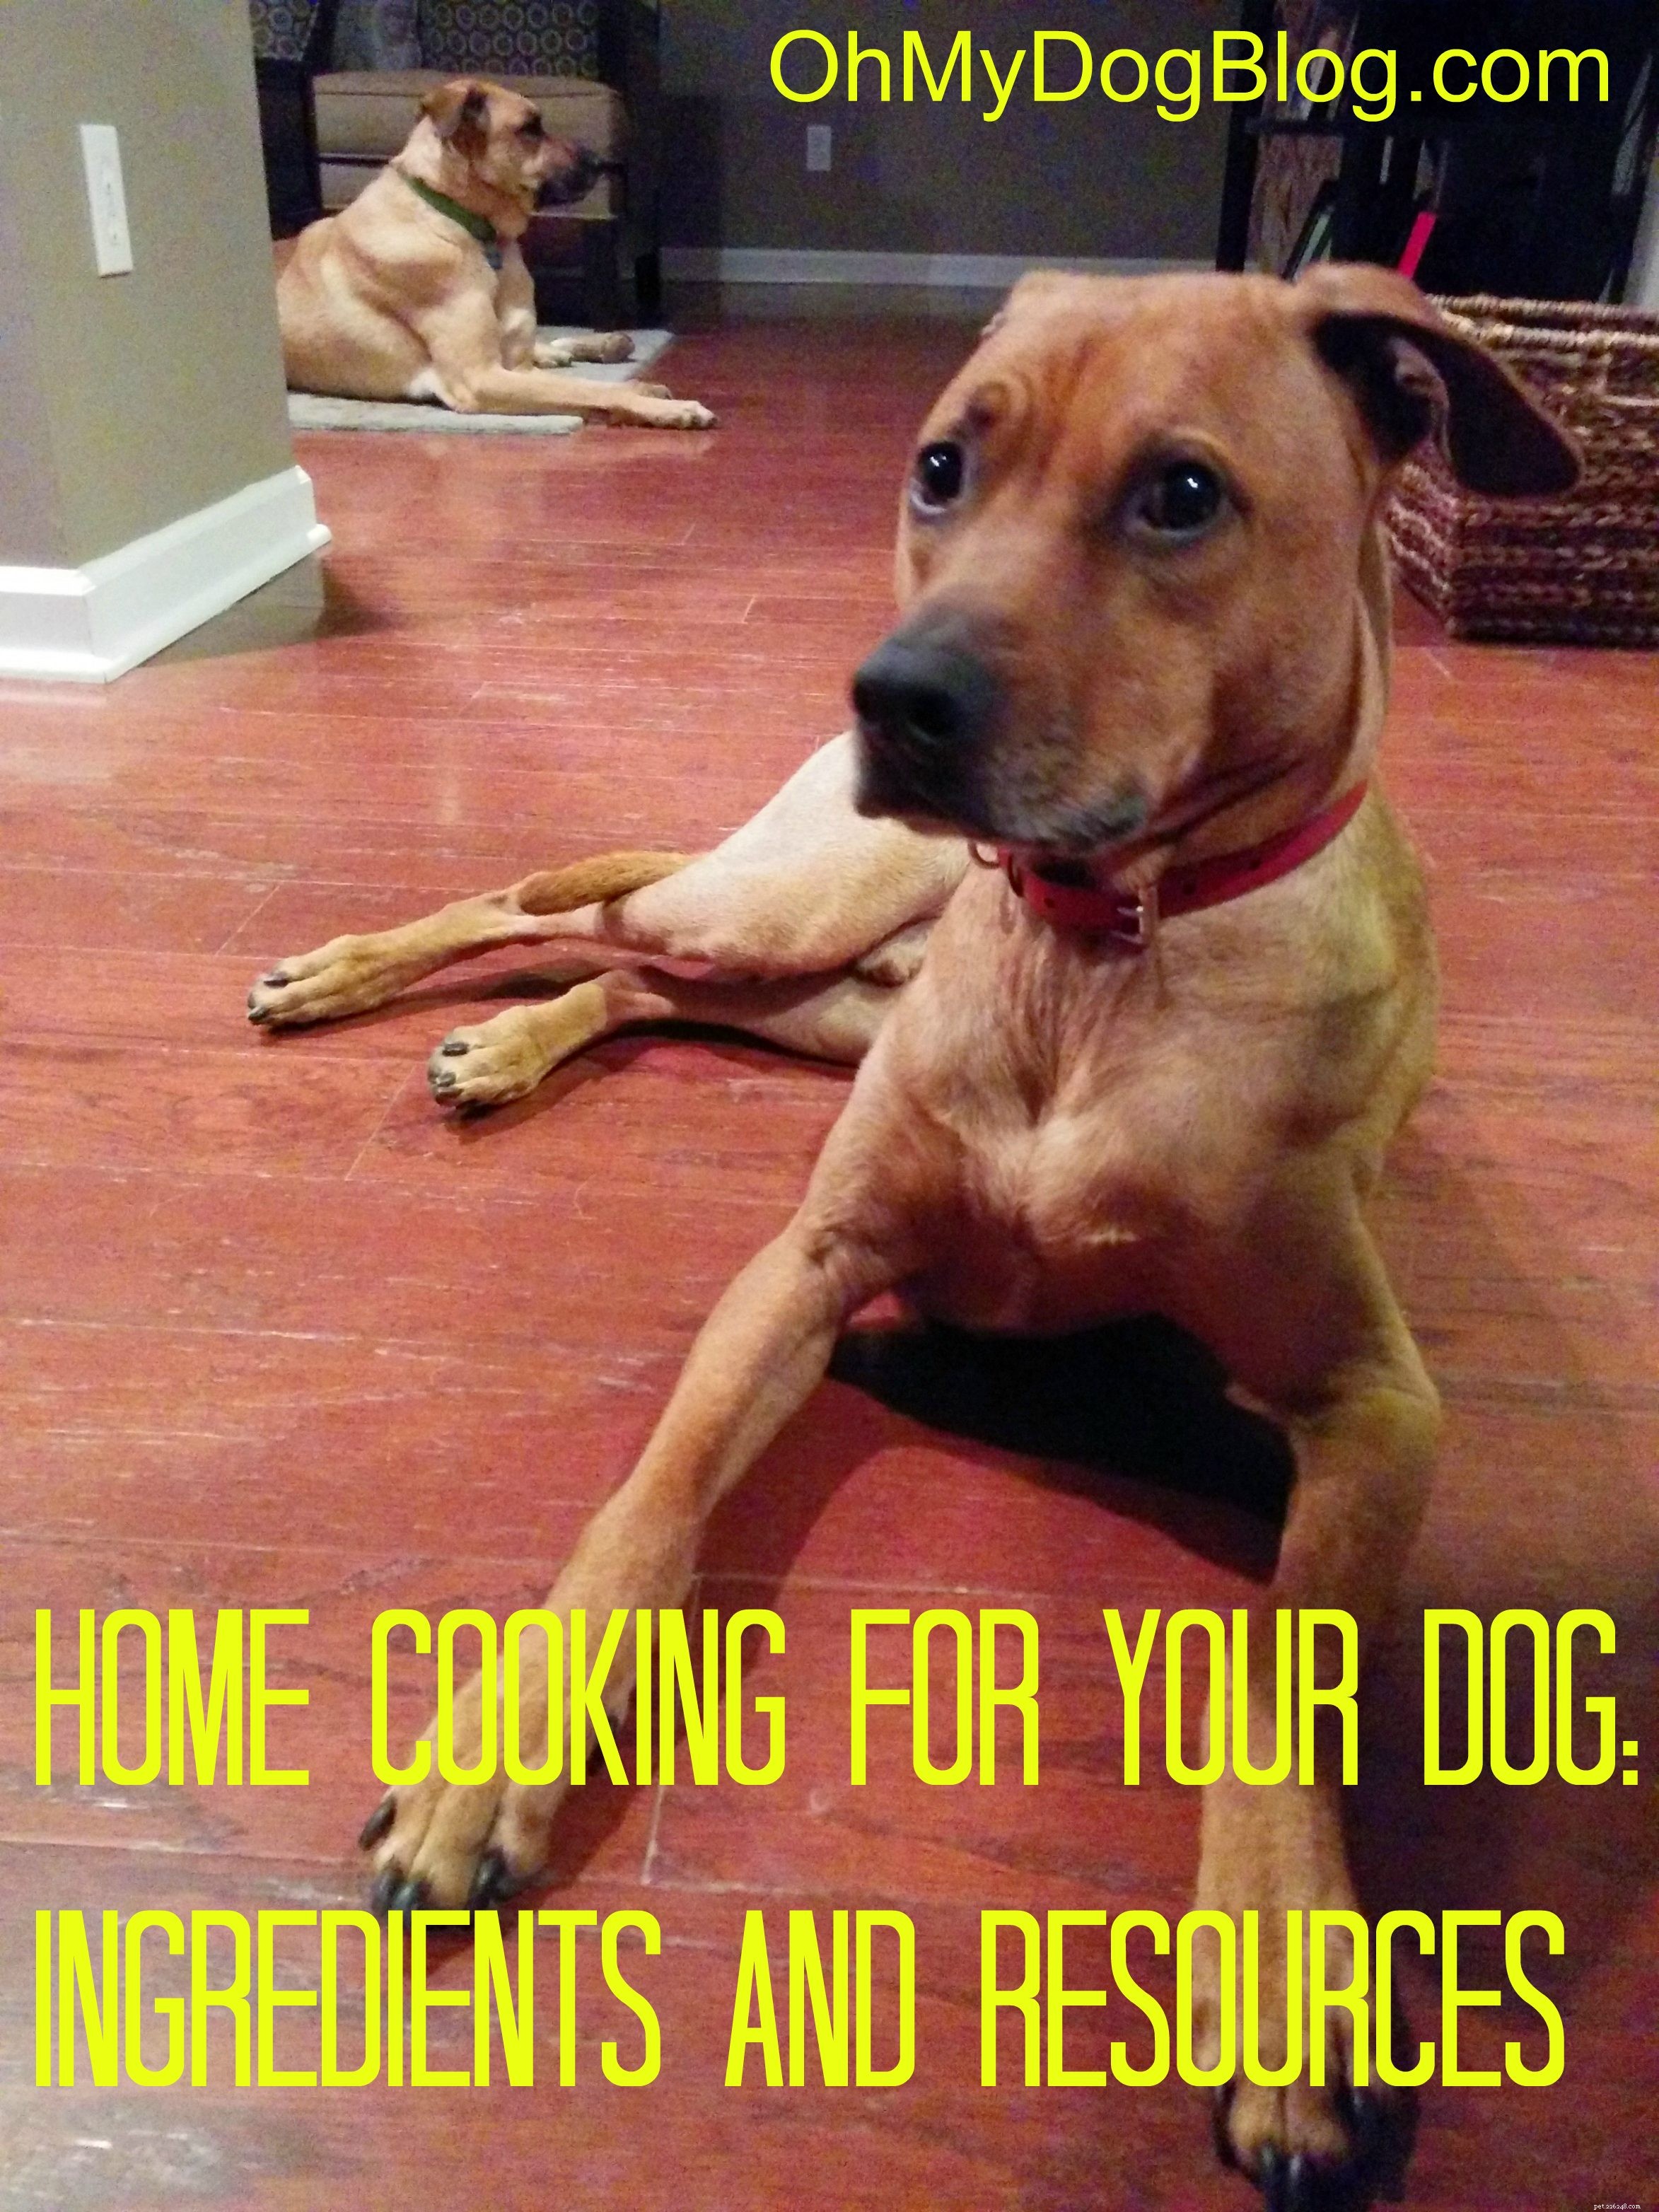 Cucina casalinga per il nostro cane:cosa abbiamo provato + risorse